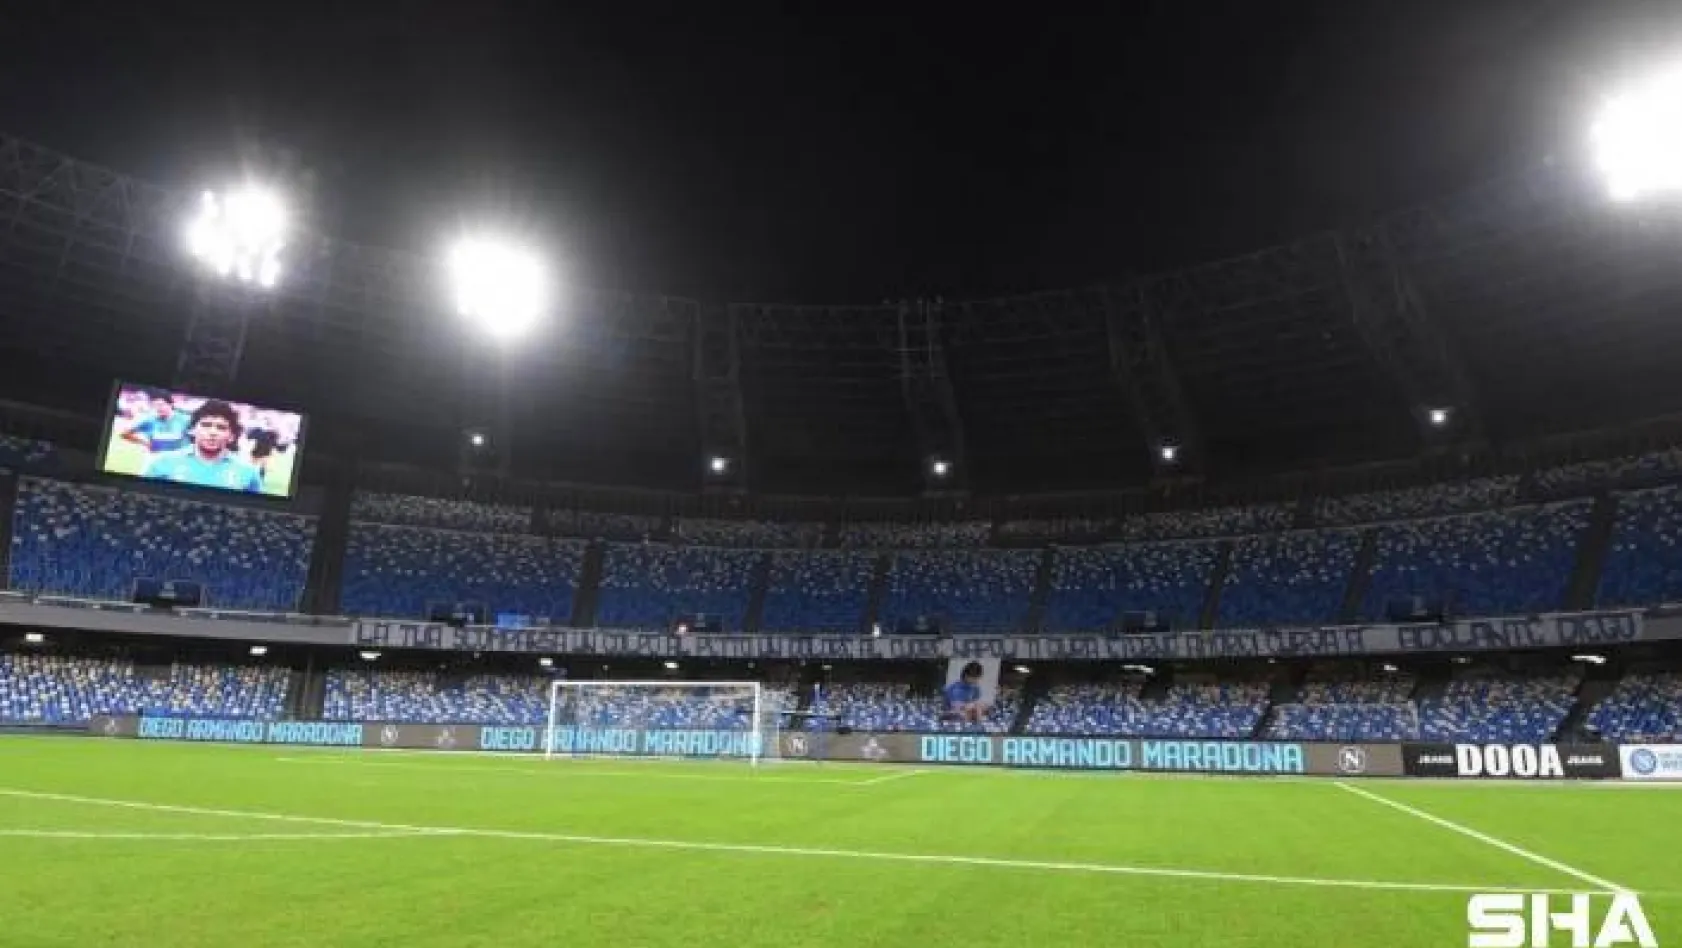 Napoli stadının adı Diego Armando Maradona olarak değiştirildi